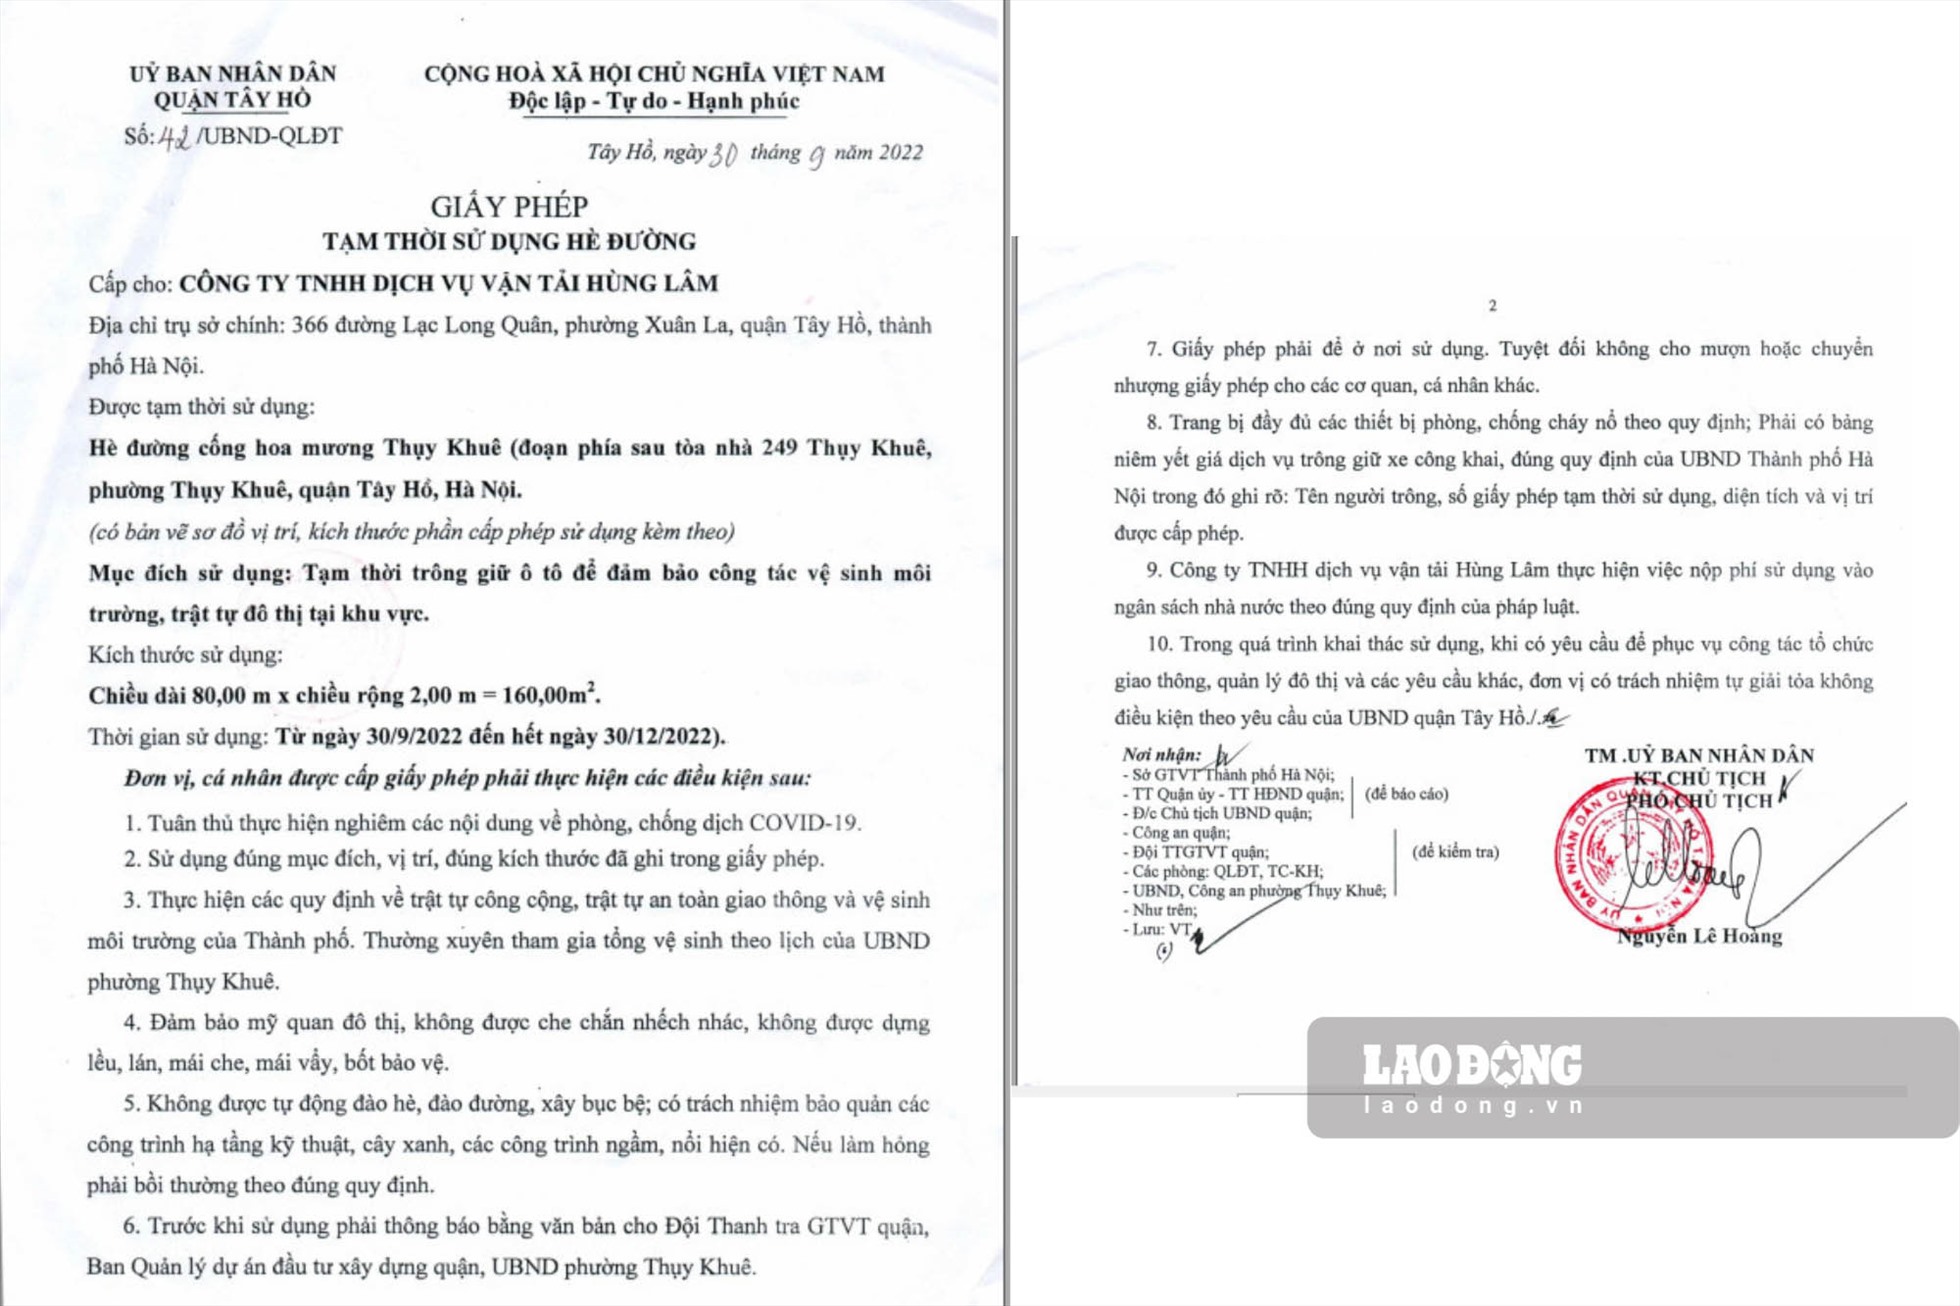 Giấy phép tạm thời sử dụng hè đường được UBND quận Tây Hồ cấp cho Công ty Hùng Lâm.